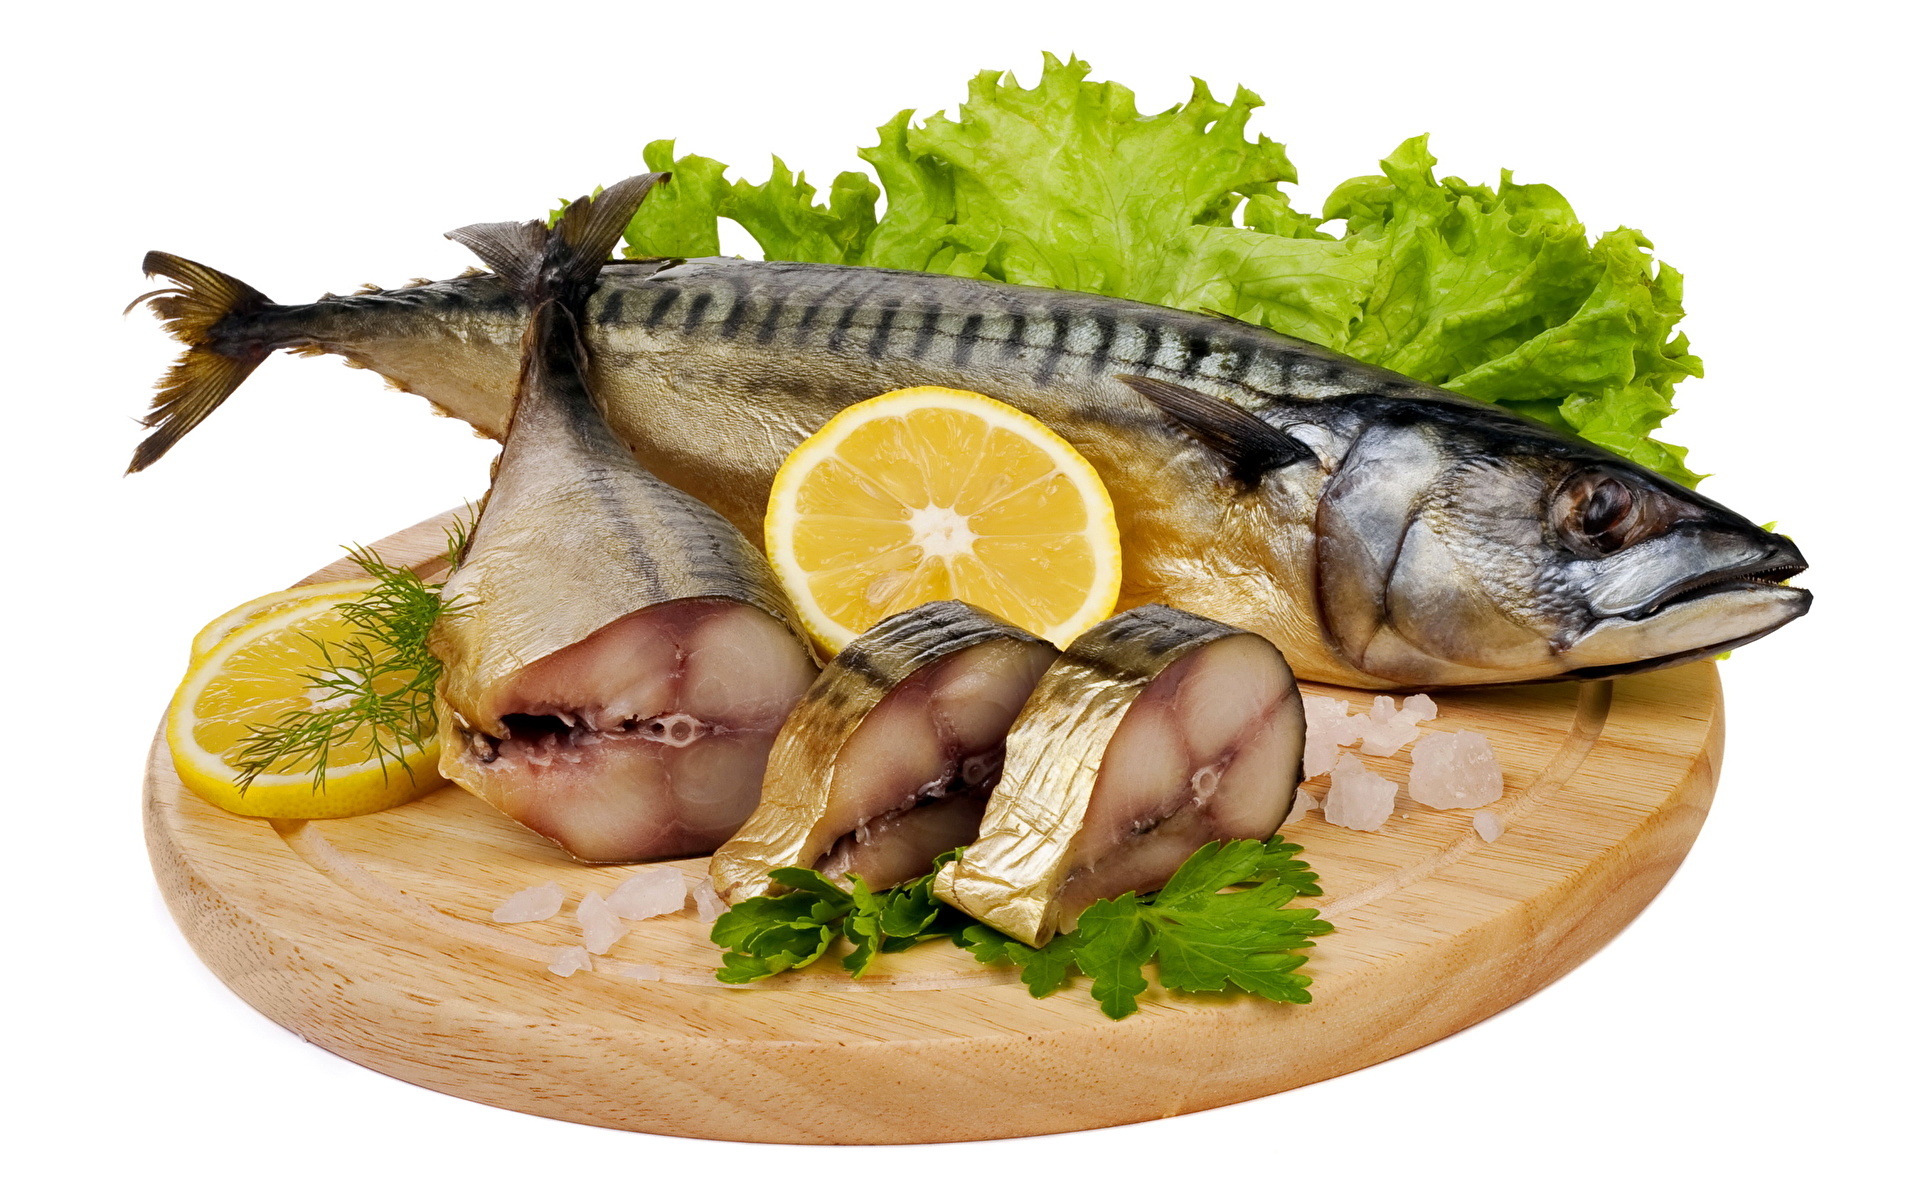 Fotos von Fische - Lebensmittel Lebensmittel Meeresfrüchte 1920x1200 das Essen